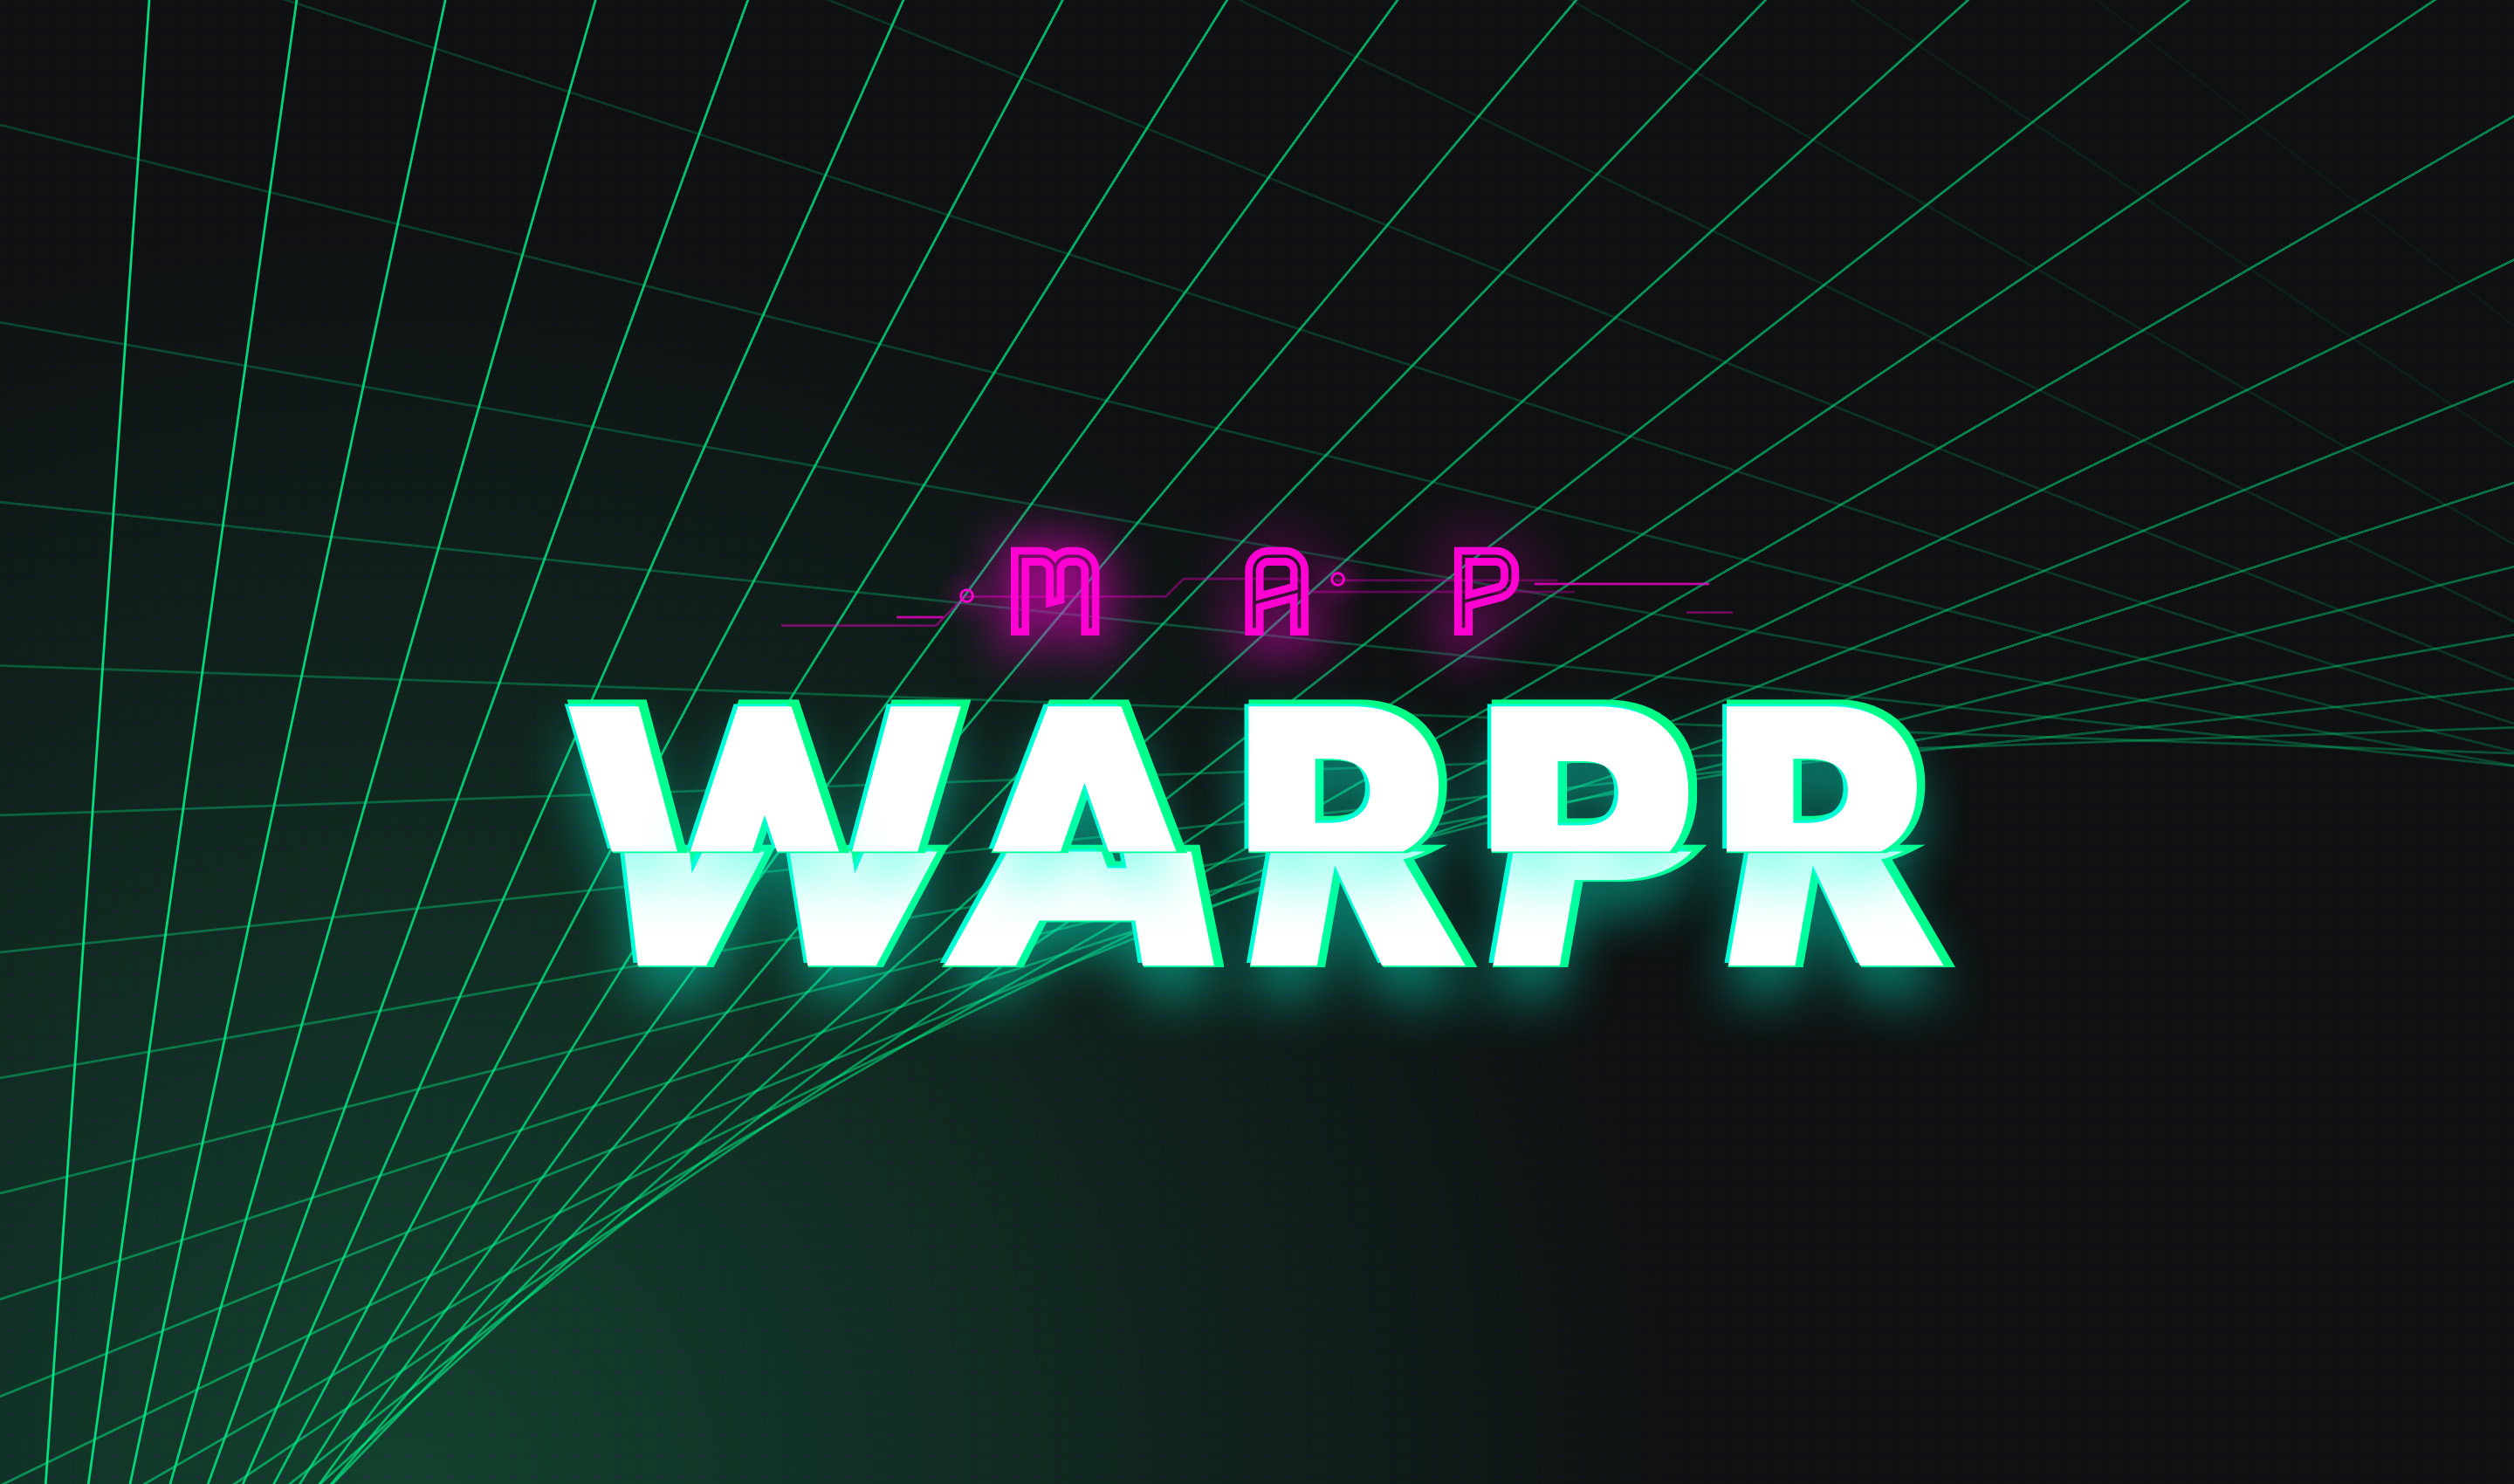 Map Warpr branding